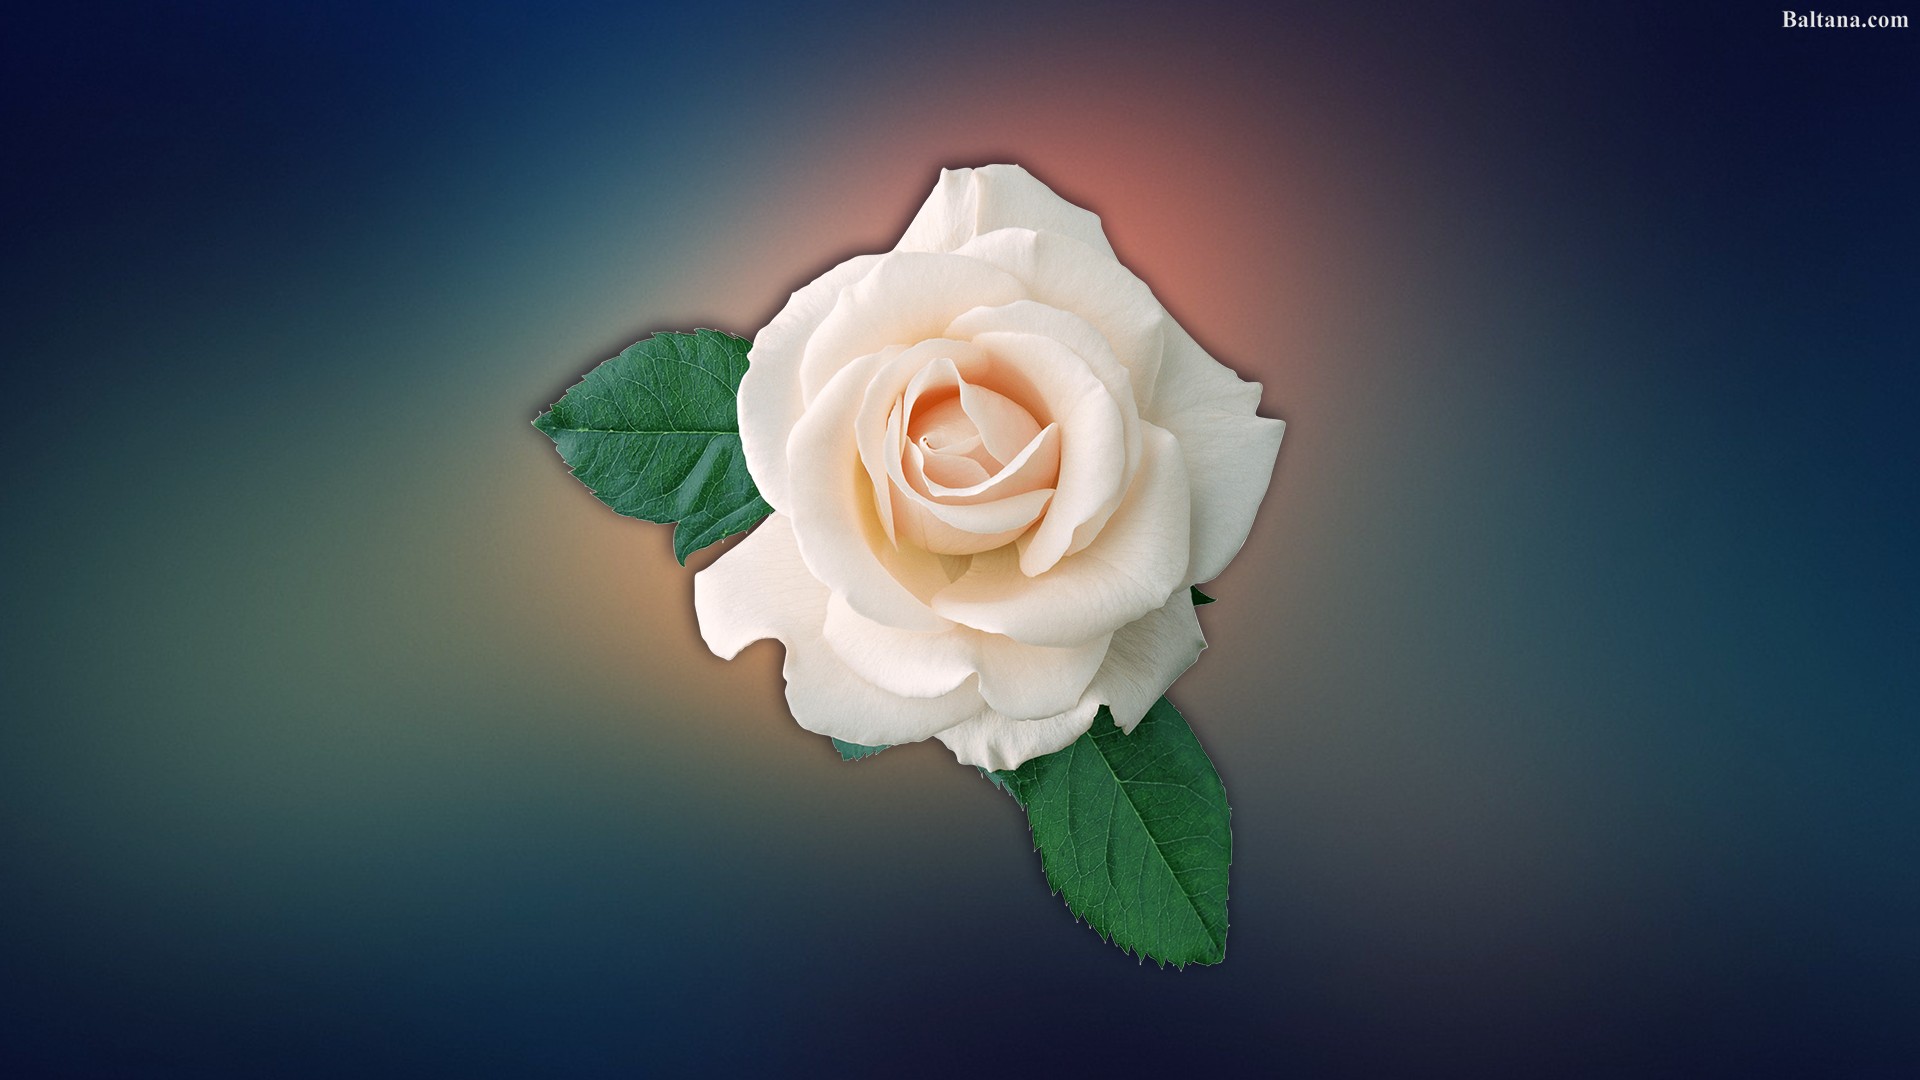 White Rose Best Hd Wallpaper - Приглашение На Выпускной Вечер , HD Wallpaper & Backgrounds